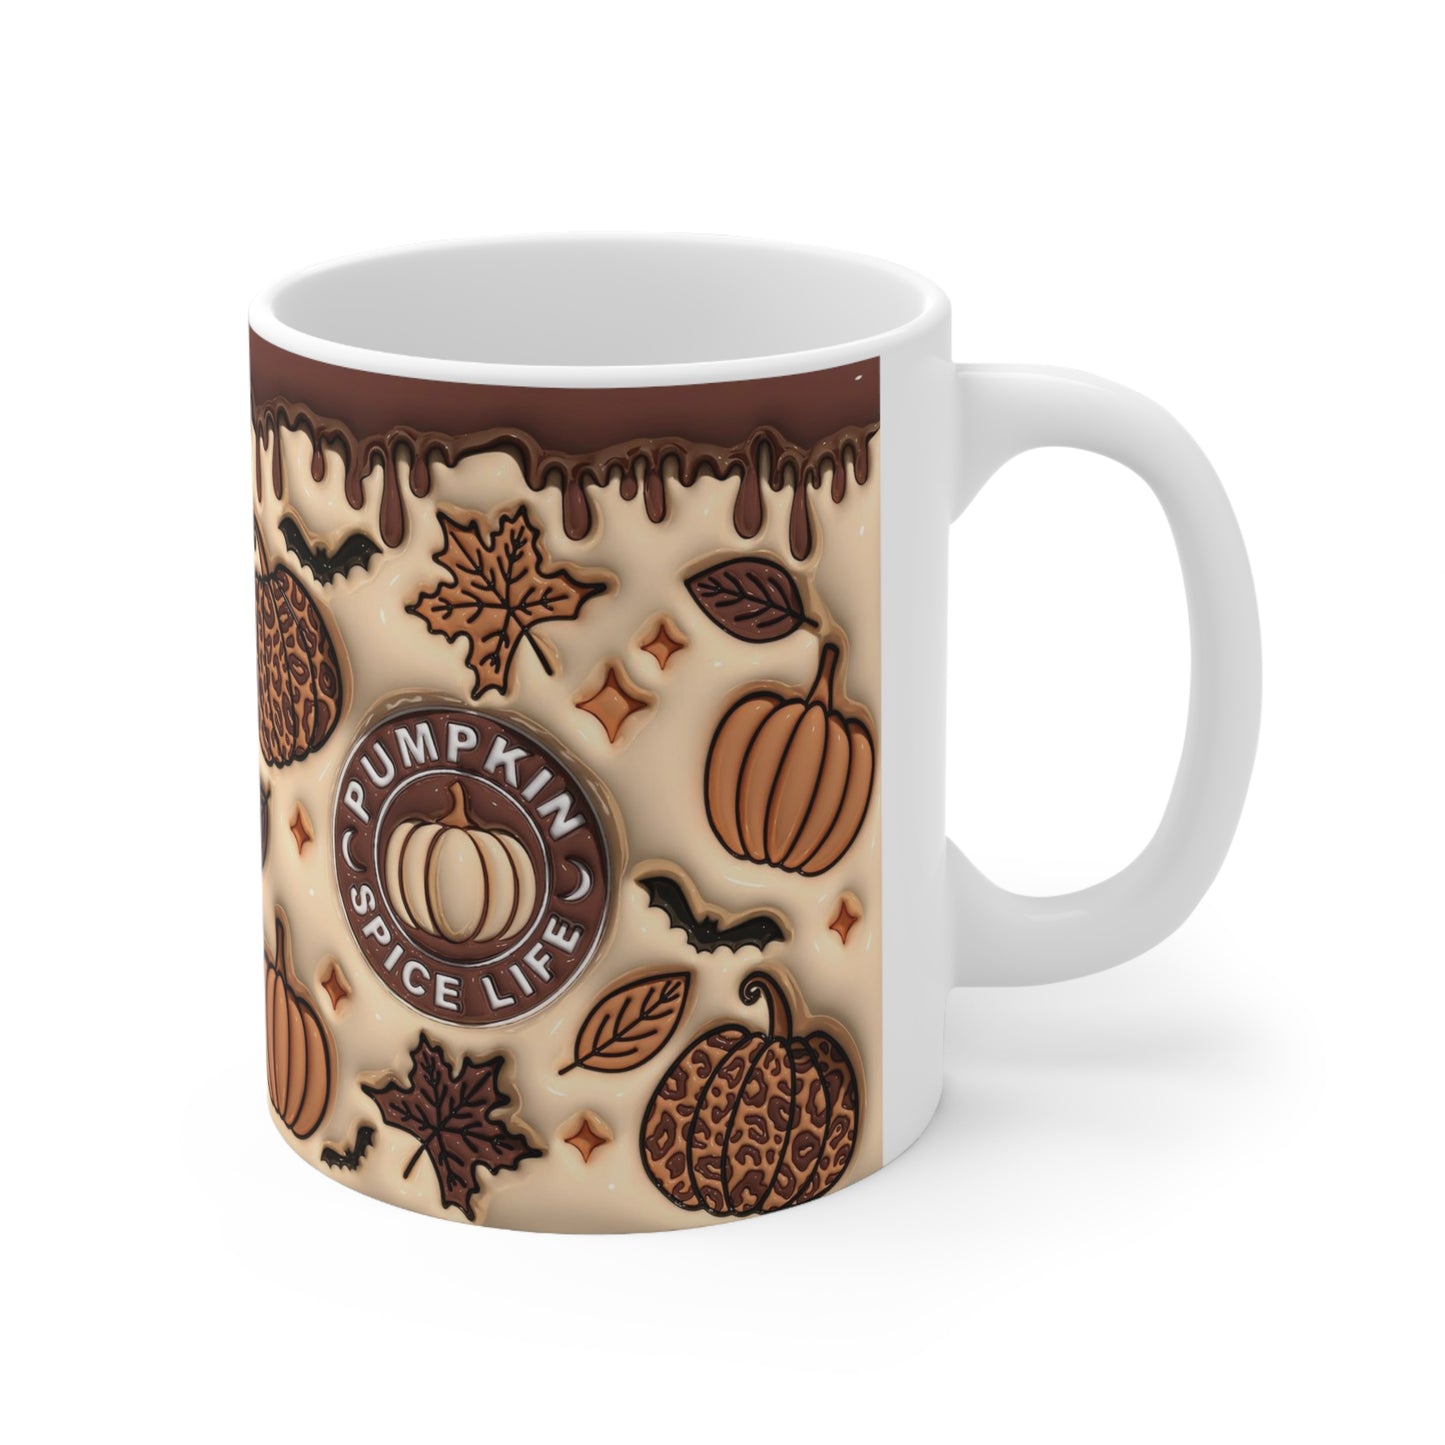 Pumpkin Spice Life - Ceramic Mug 11oz